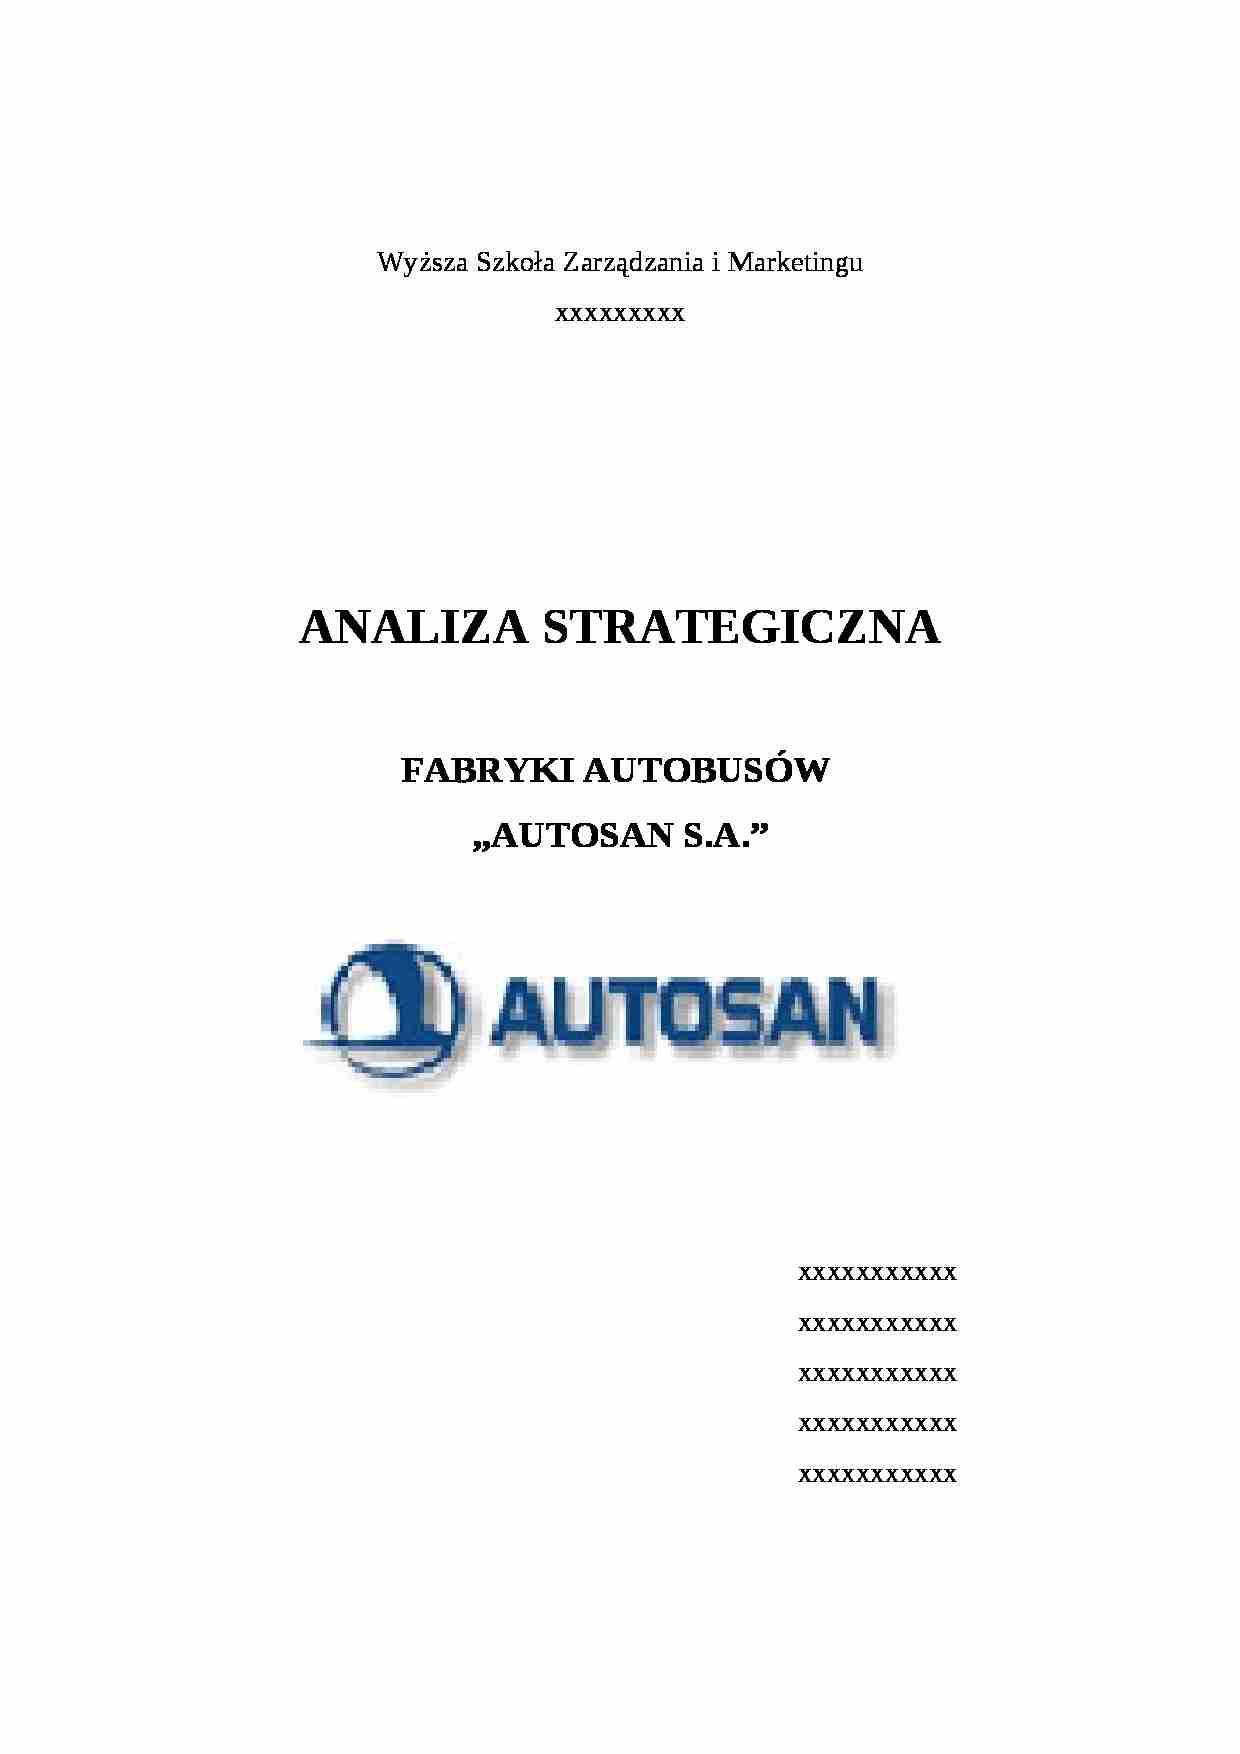 Analiza strategiczna - fabryka autobusów - strona 1